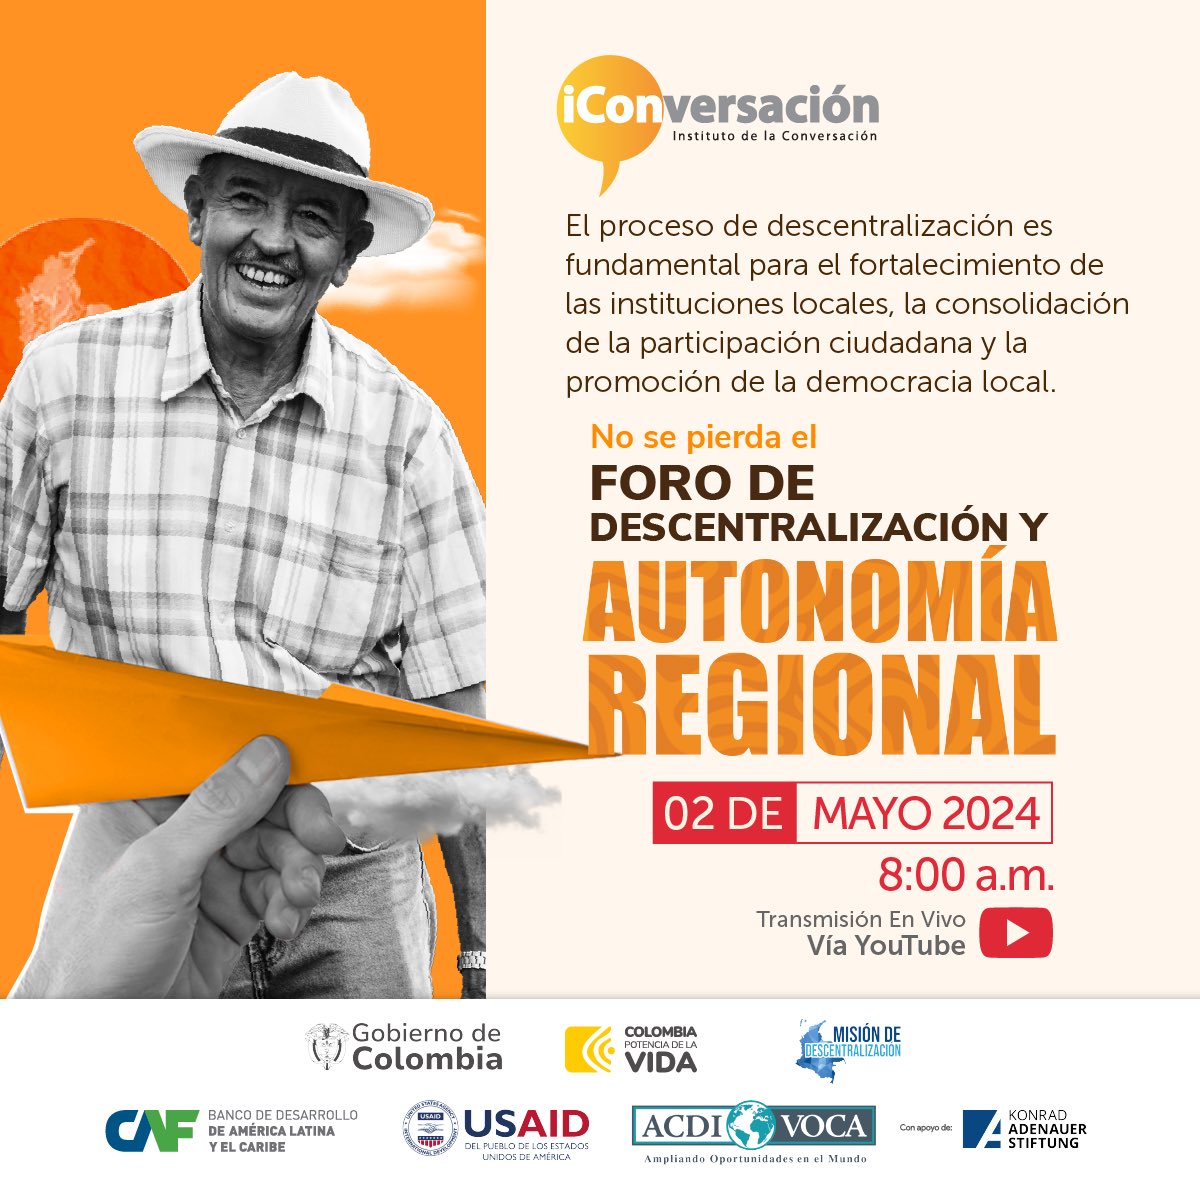 Ya estamos #EnVivo en el Foro de #Descentralización y #Autonomía Regional para conversar sobre los principales hallazgos de la #Misión de #Descentralización en Colombia. ¡Únete a la transmisión aquí! 👇 youtube.com/live/gHGh5r_W0…